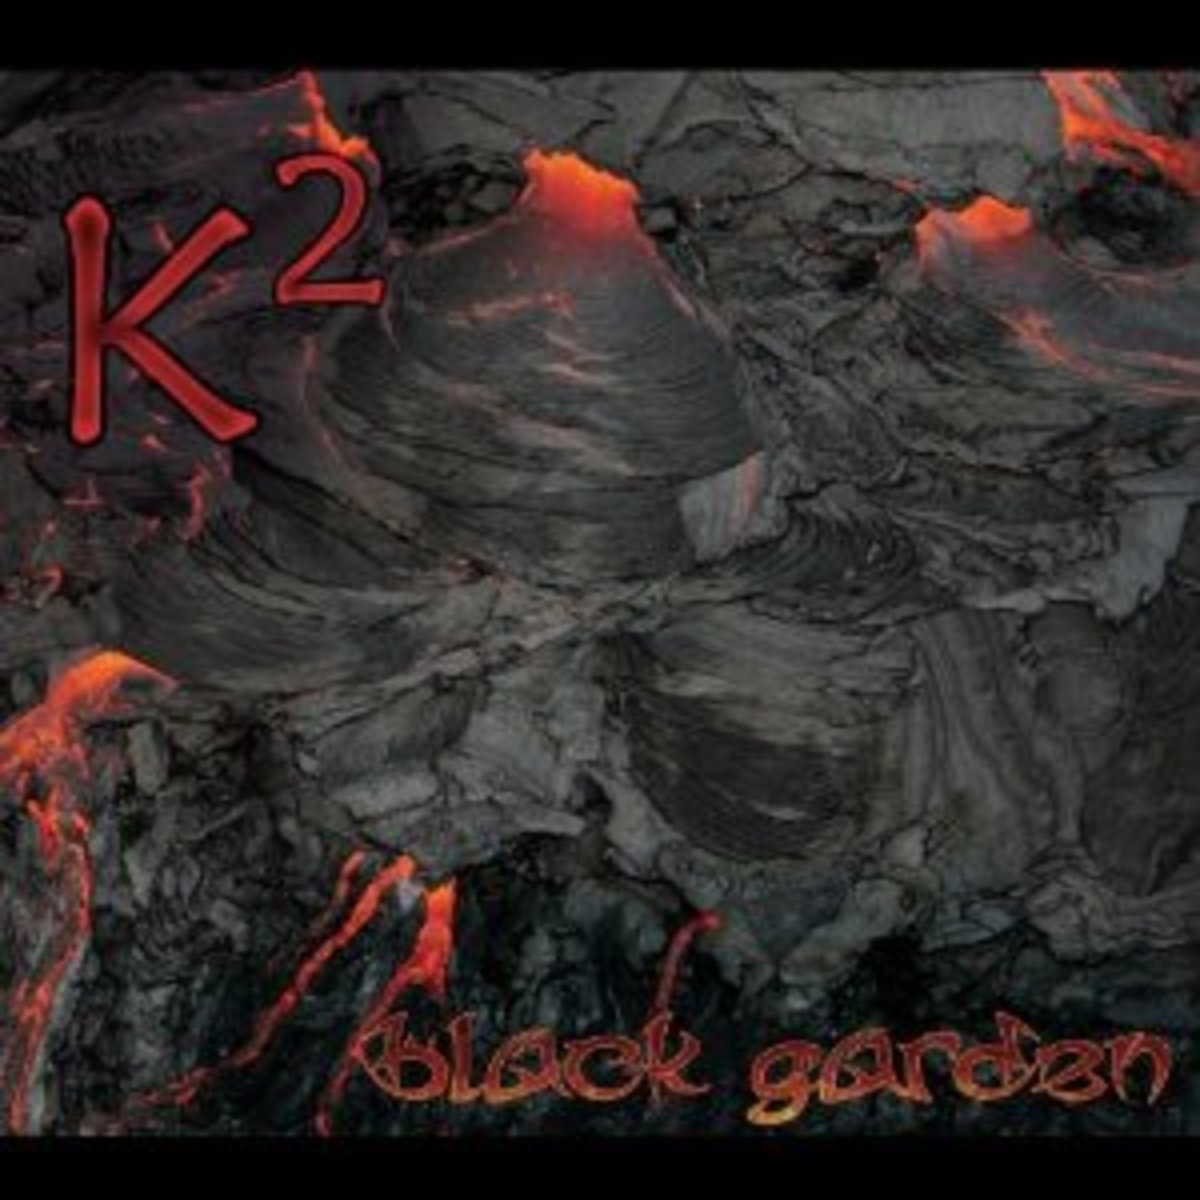 K2_black_garden